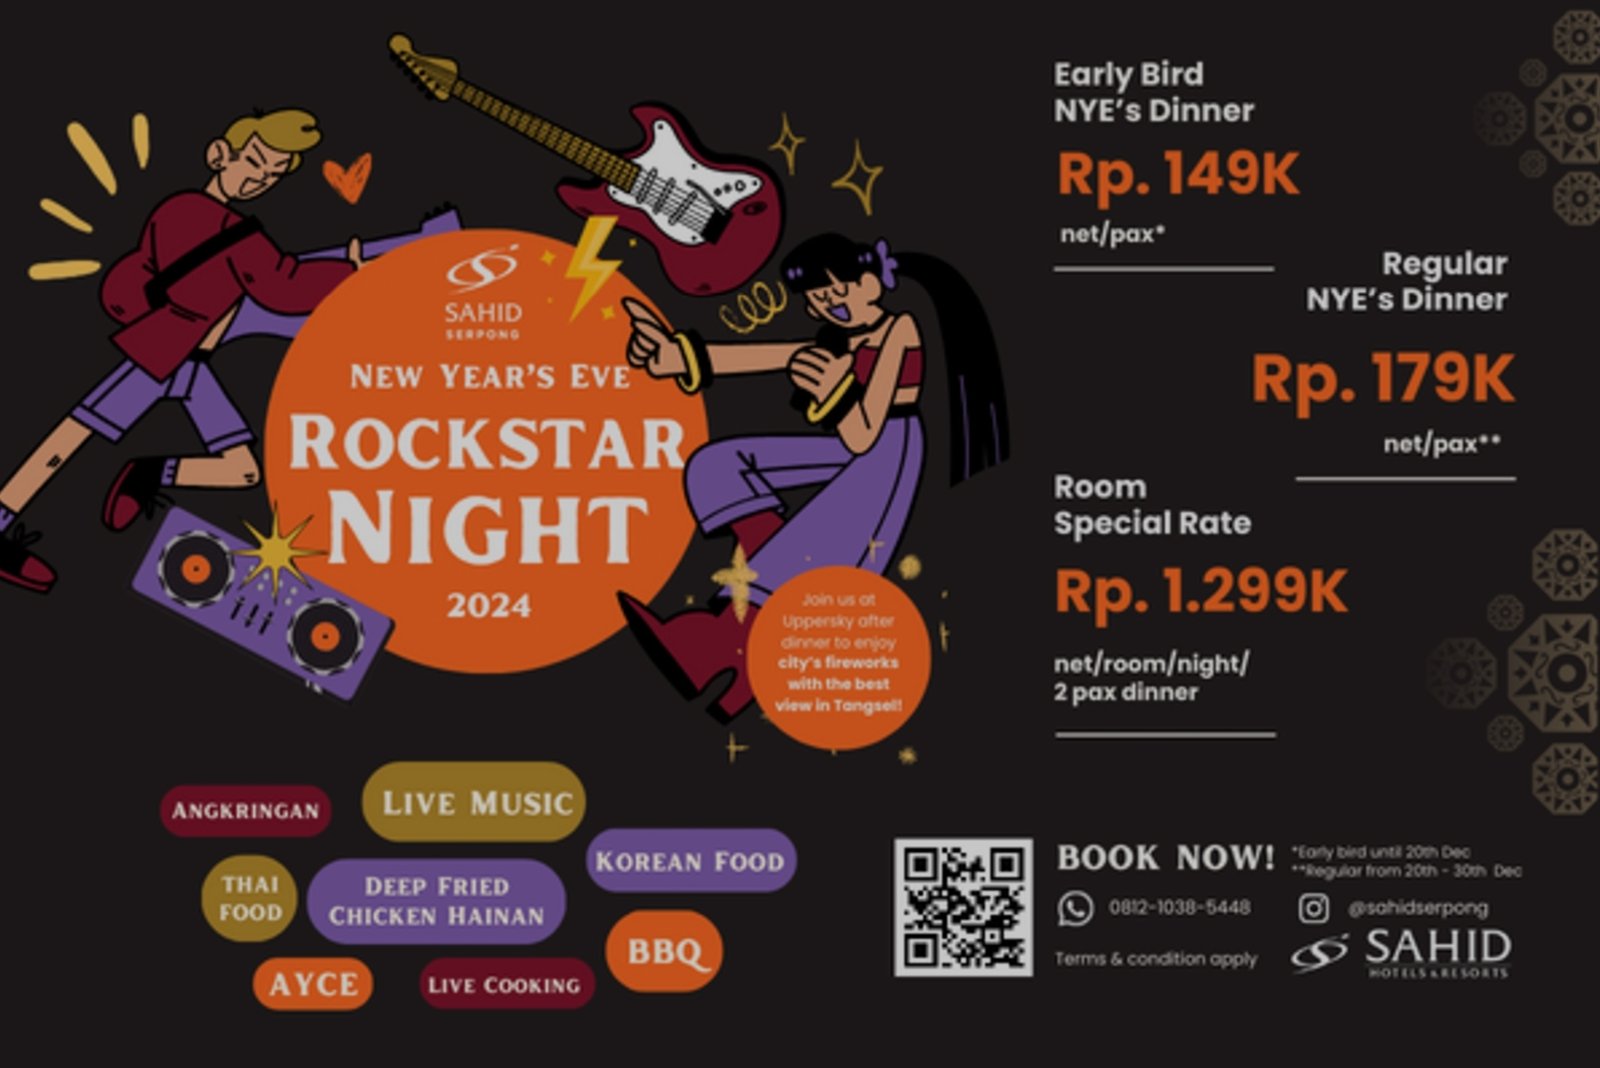 Rayakan Tahun Baru, Hotel Sahid Serpong hadirkan Rockstar Night Dinner mulai dari Rp 149 ribu